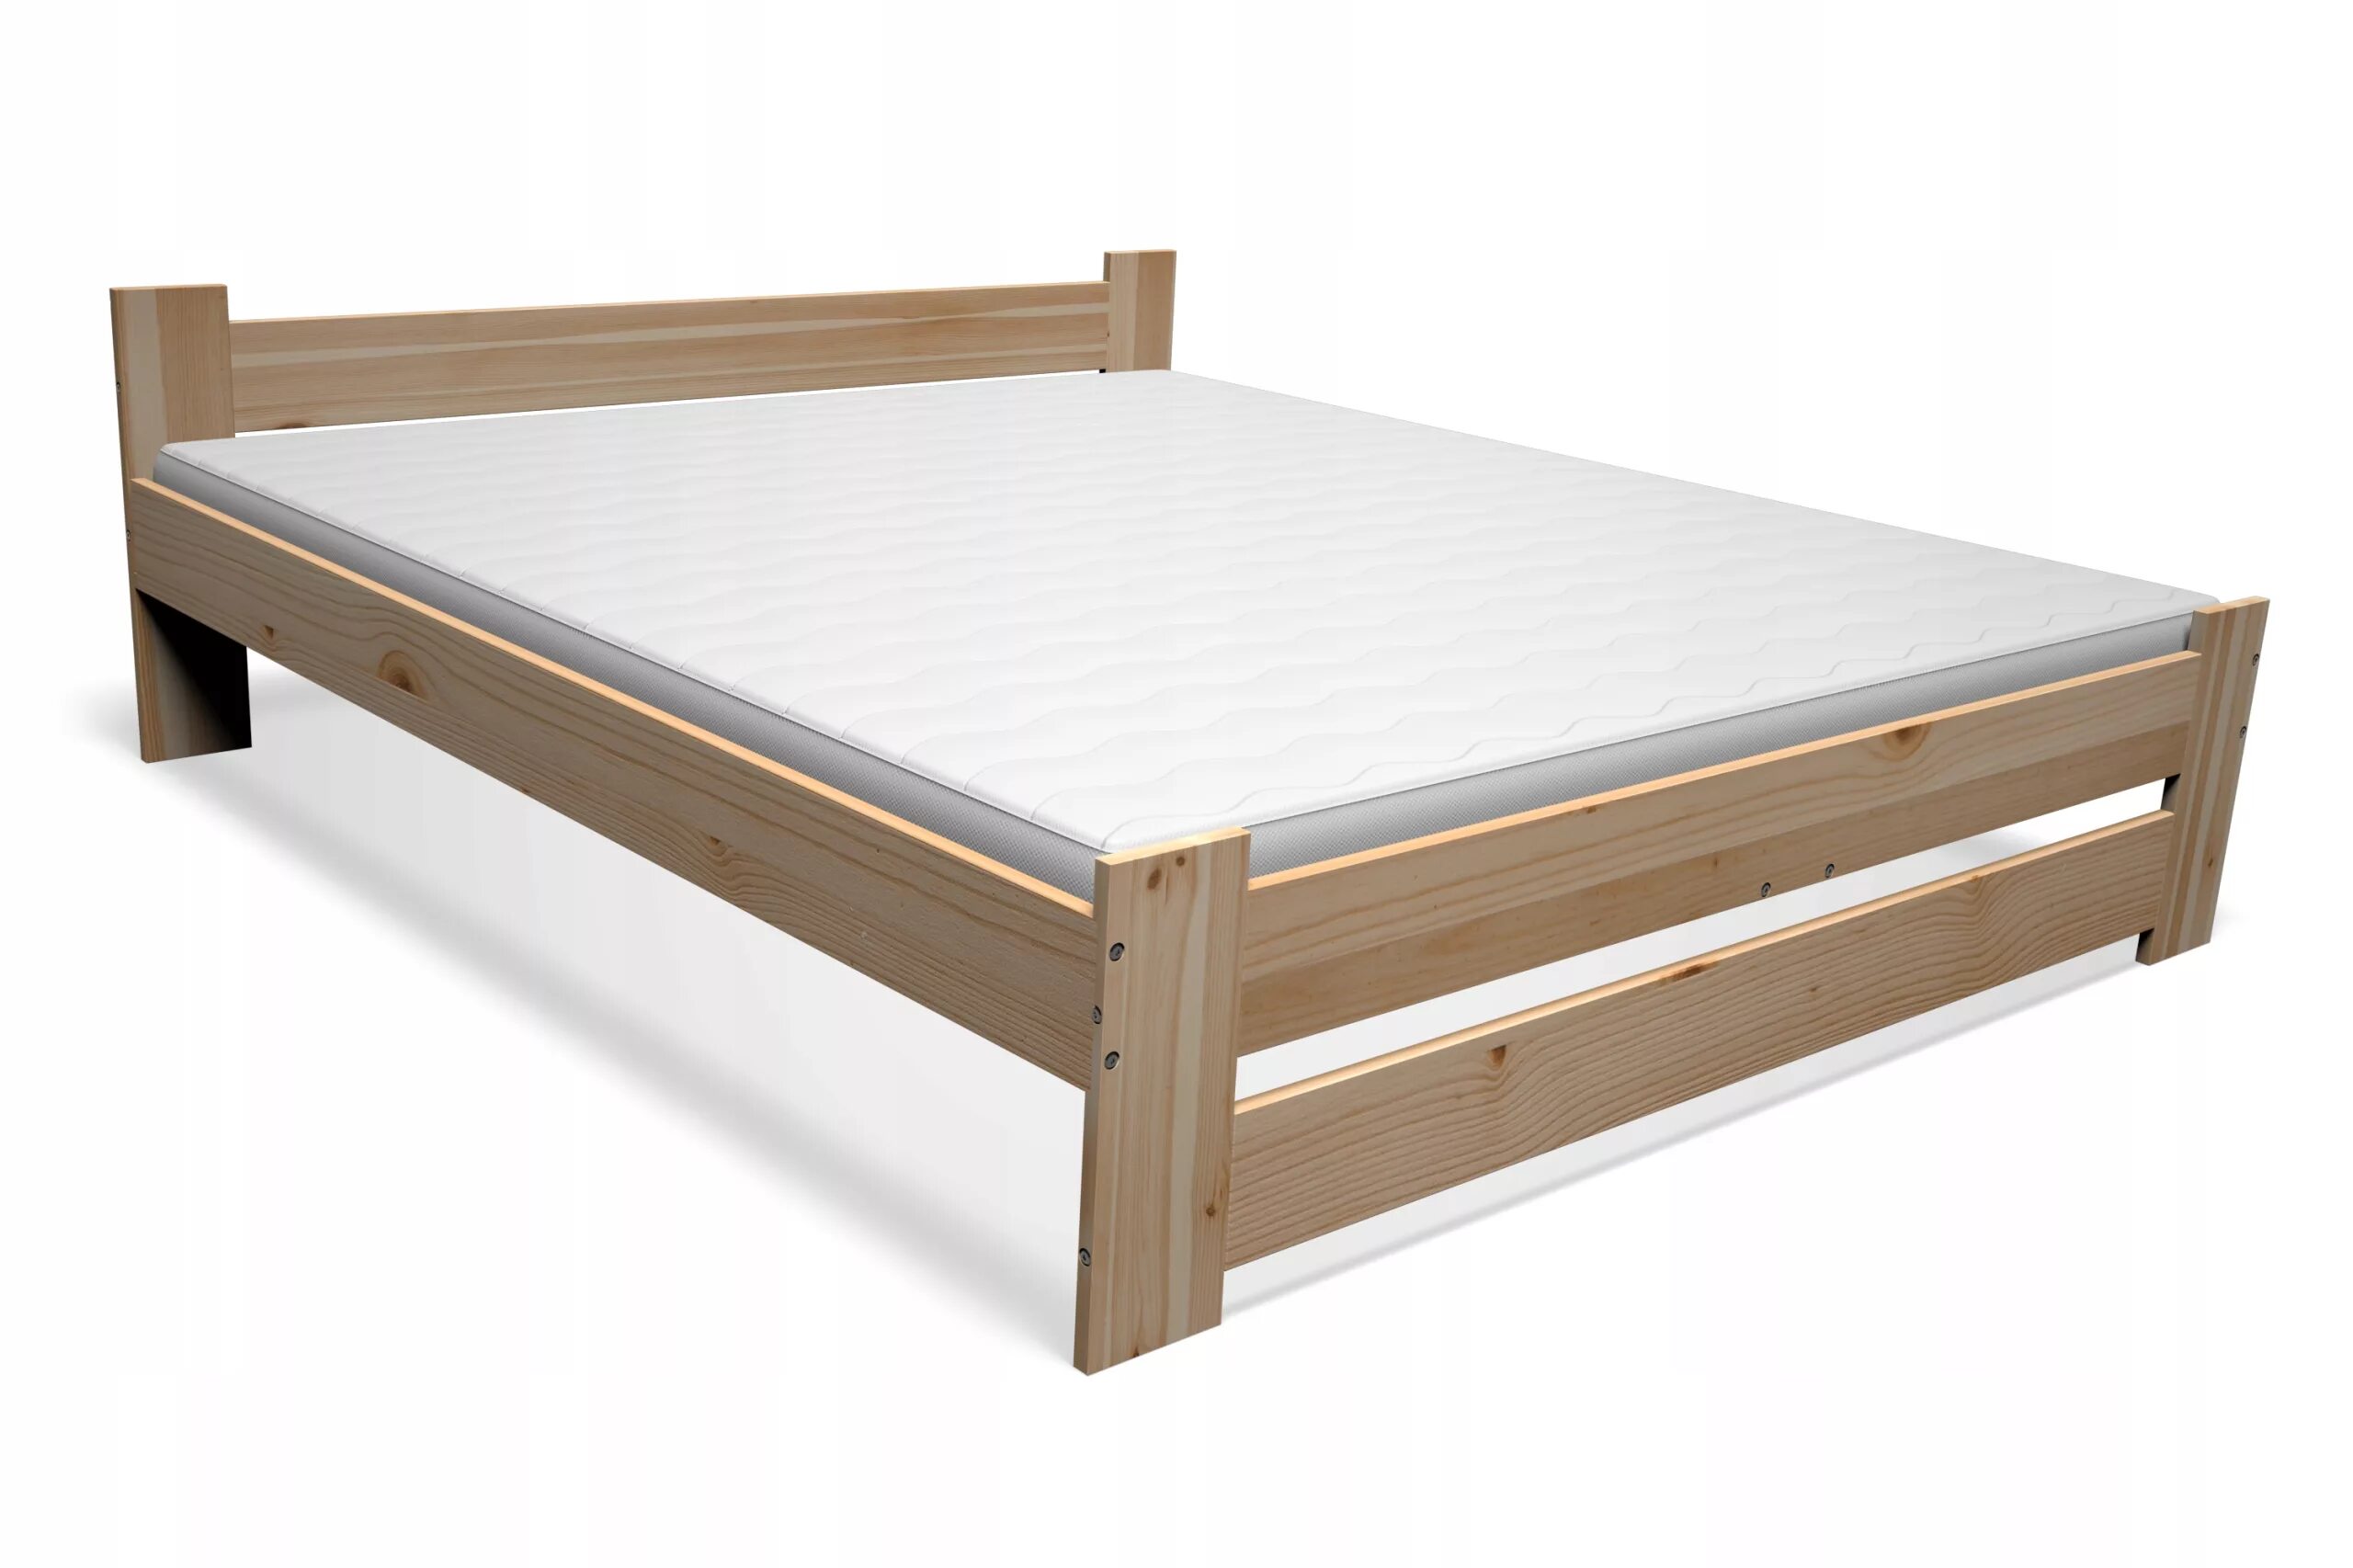 Купить деревянную кровать недорого. Деревянная кровать Eureka 140x200. Кровать Альянс массив сосны 160/200. Кровать из массива сосны 160х200 Грация 4.